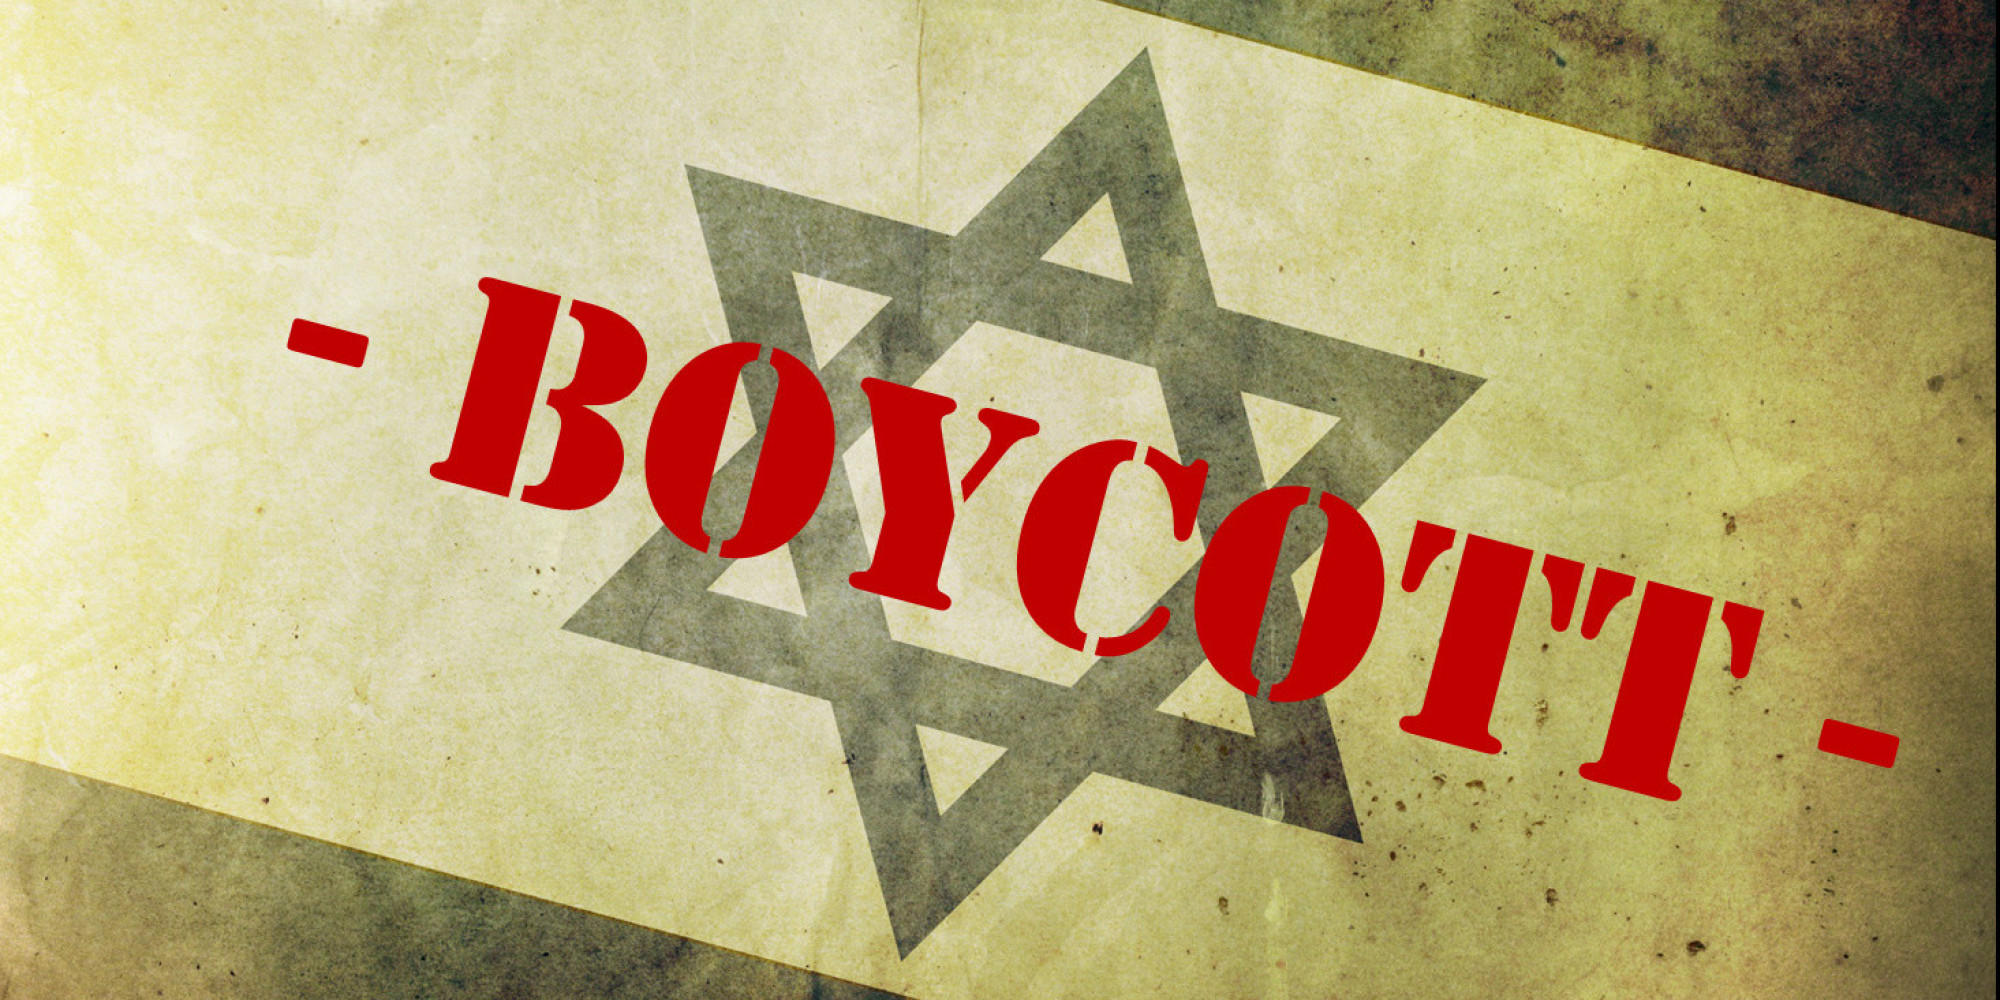 Le boycott économique, politique ou culturel d'Israël, une tendance en